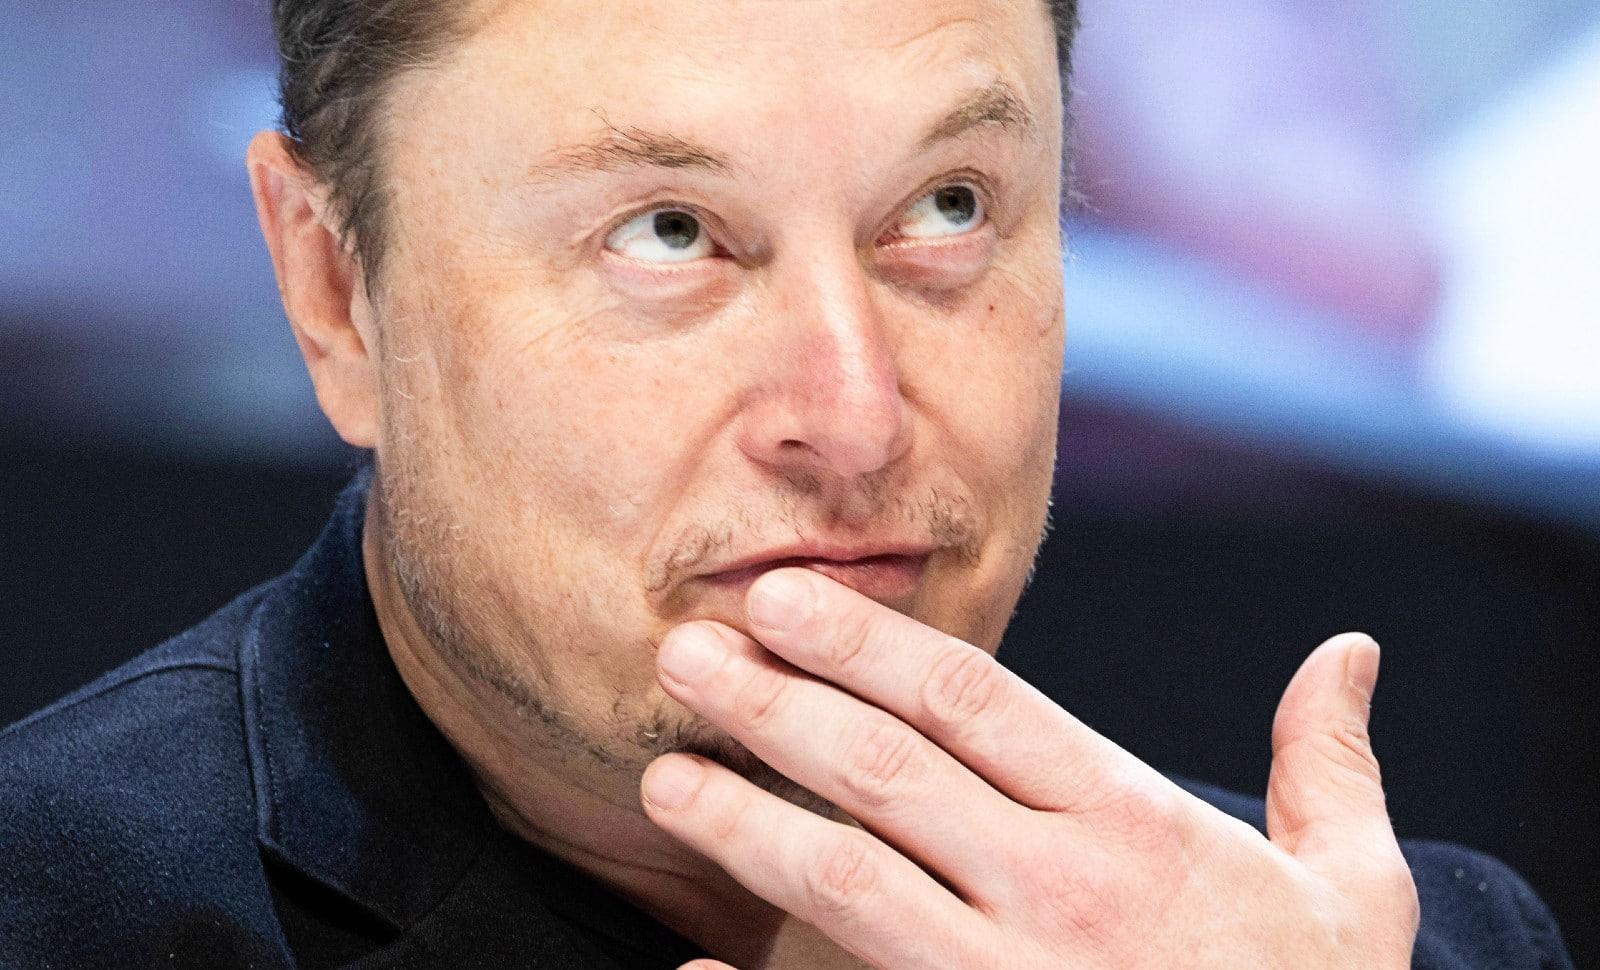 Elon Musk: Mais pourquoi est-il si méchant?